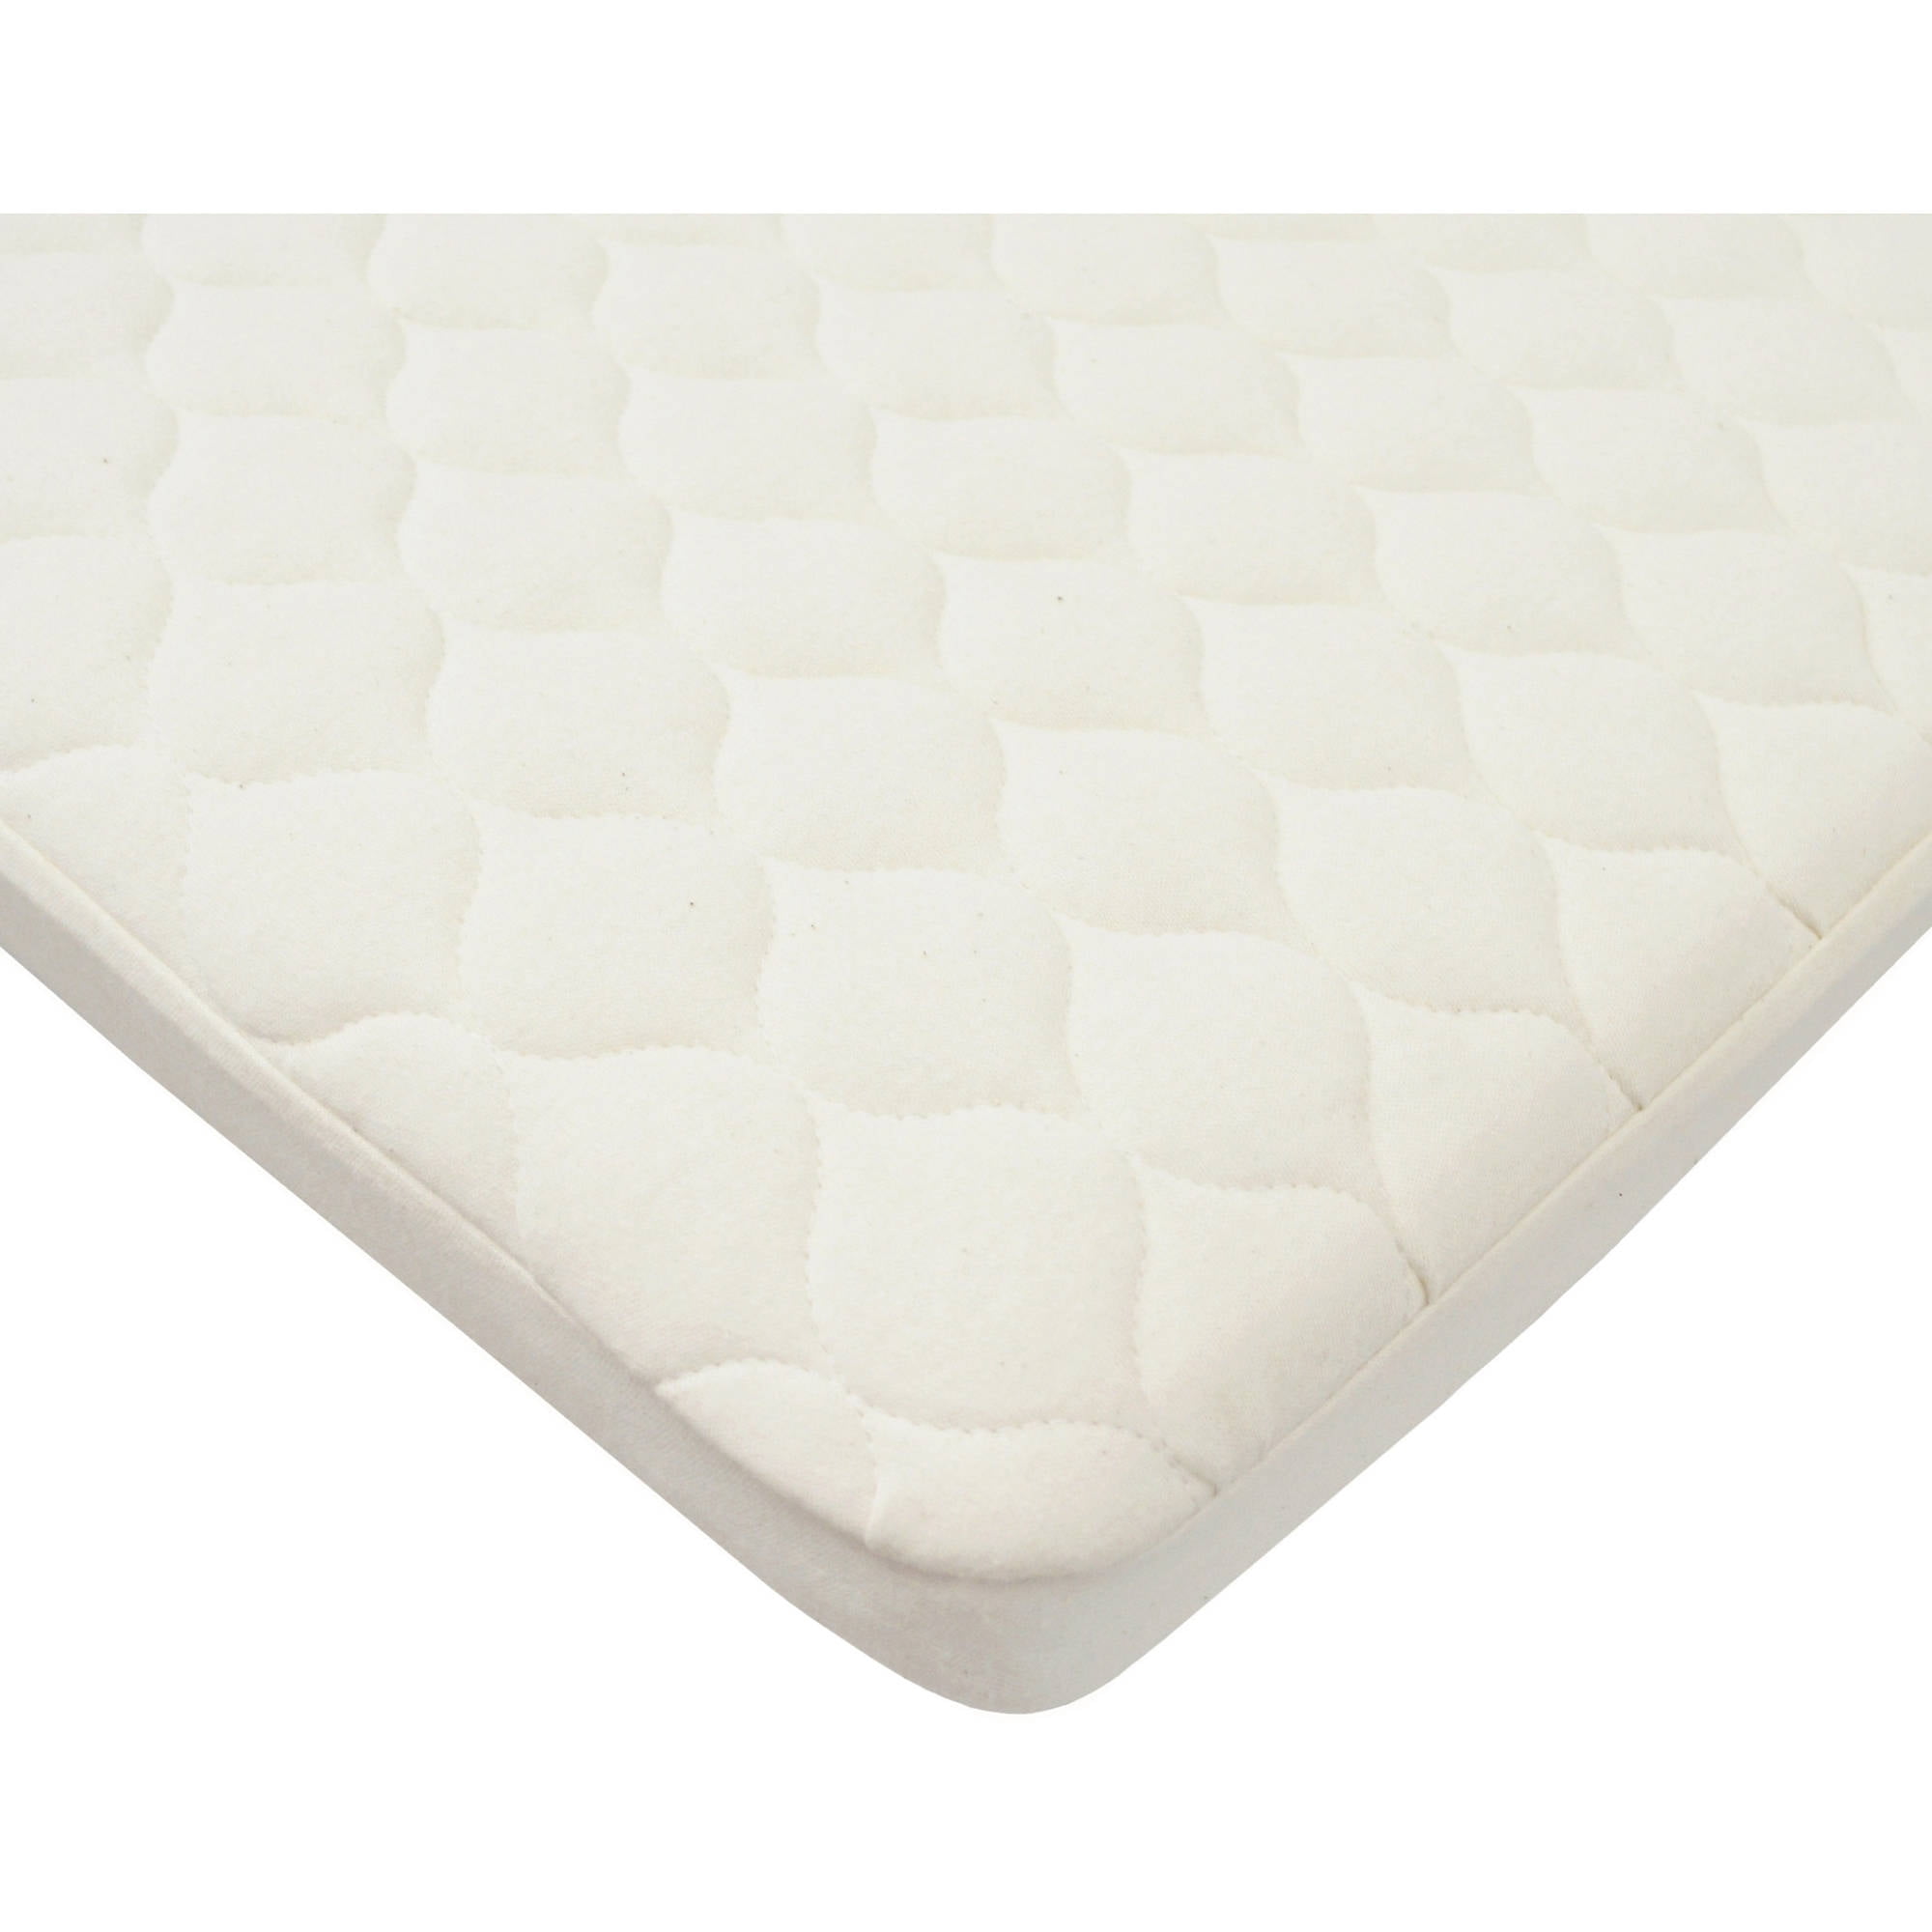 napyou crib mattress